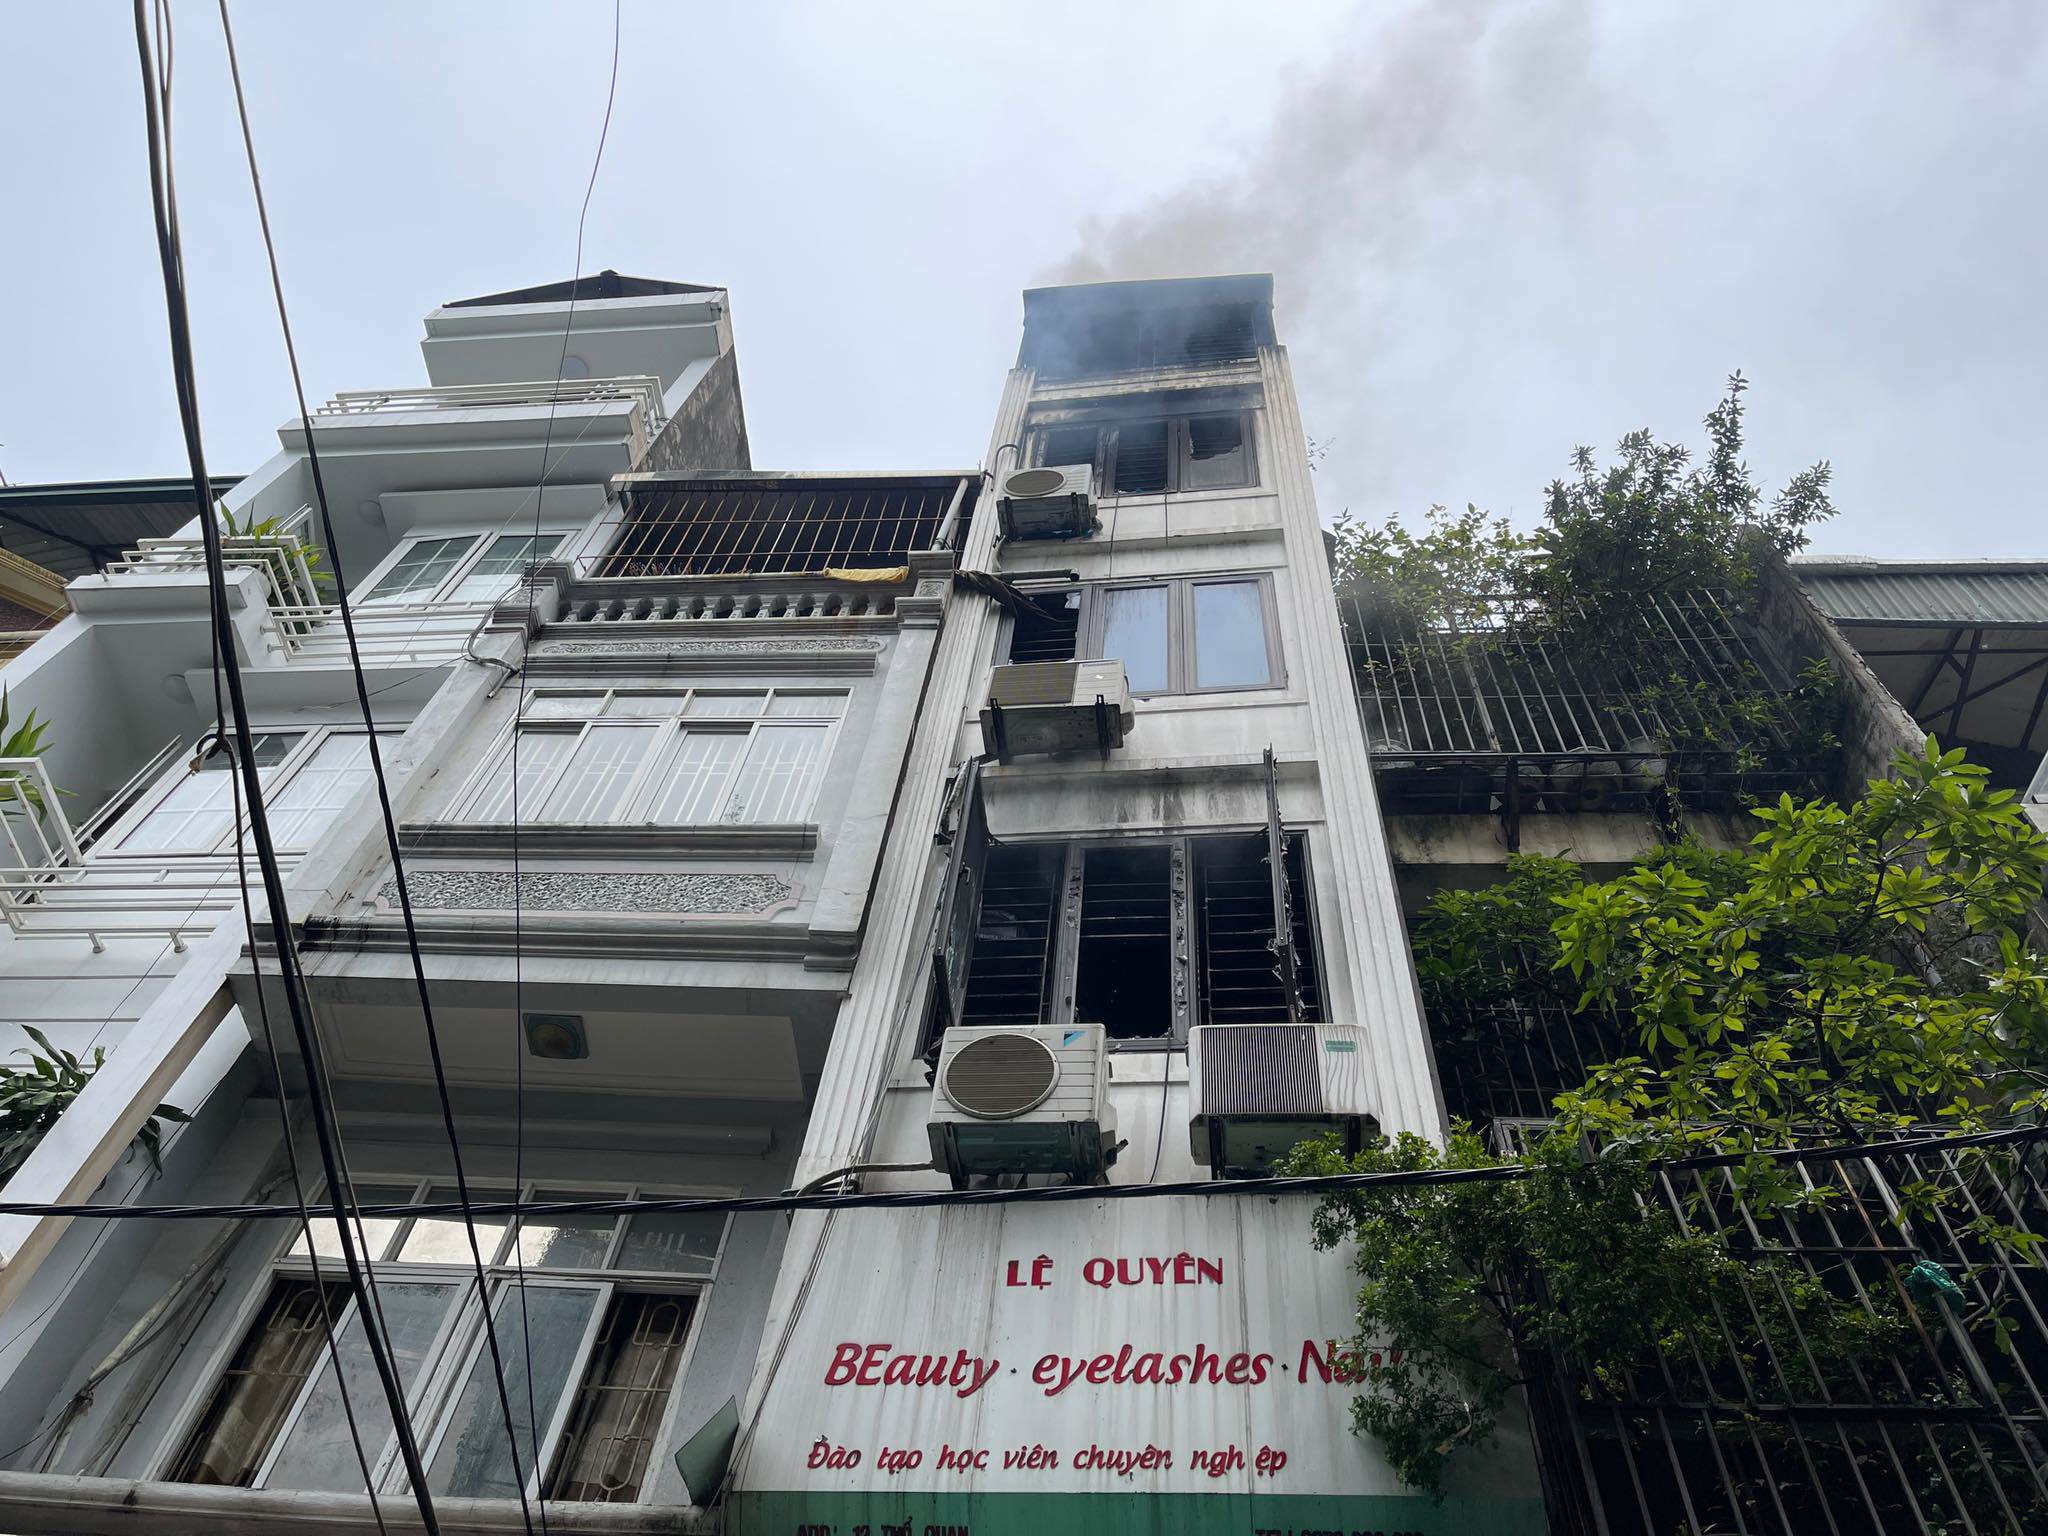 Vào khoảng 5h22 ngày 8/7, tại số nhà 12, ngõ Thổ Quan, phường Thổ Quan, quận Đống Đa (Hà Nội) xảy ra vụ hỏa hoạn.